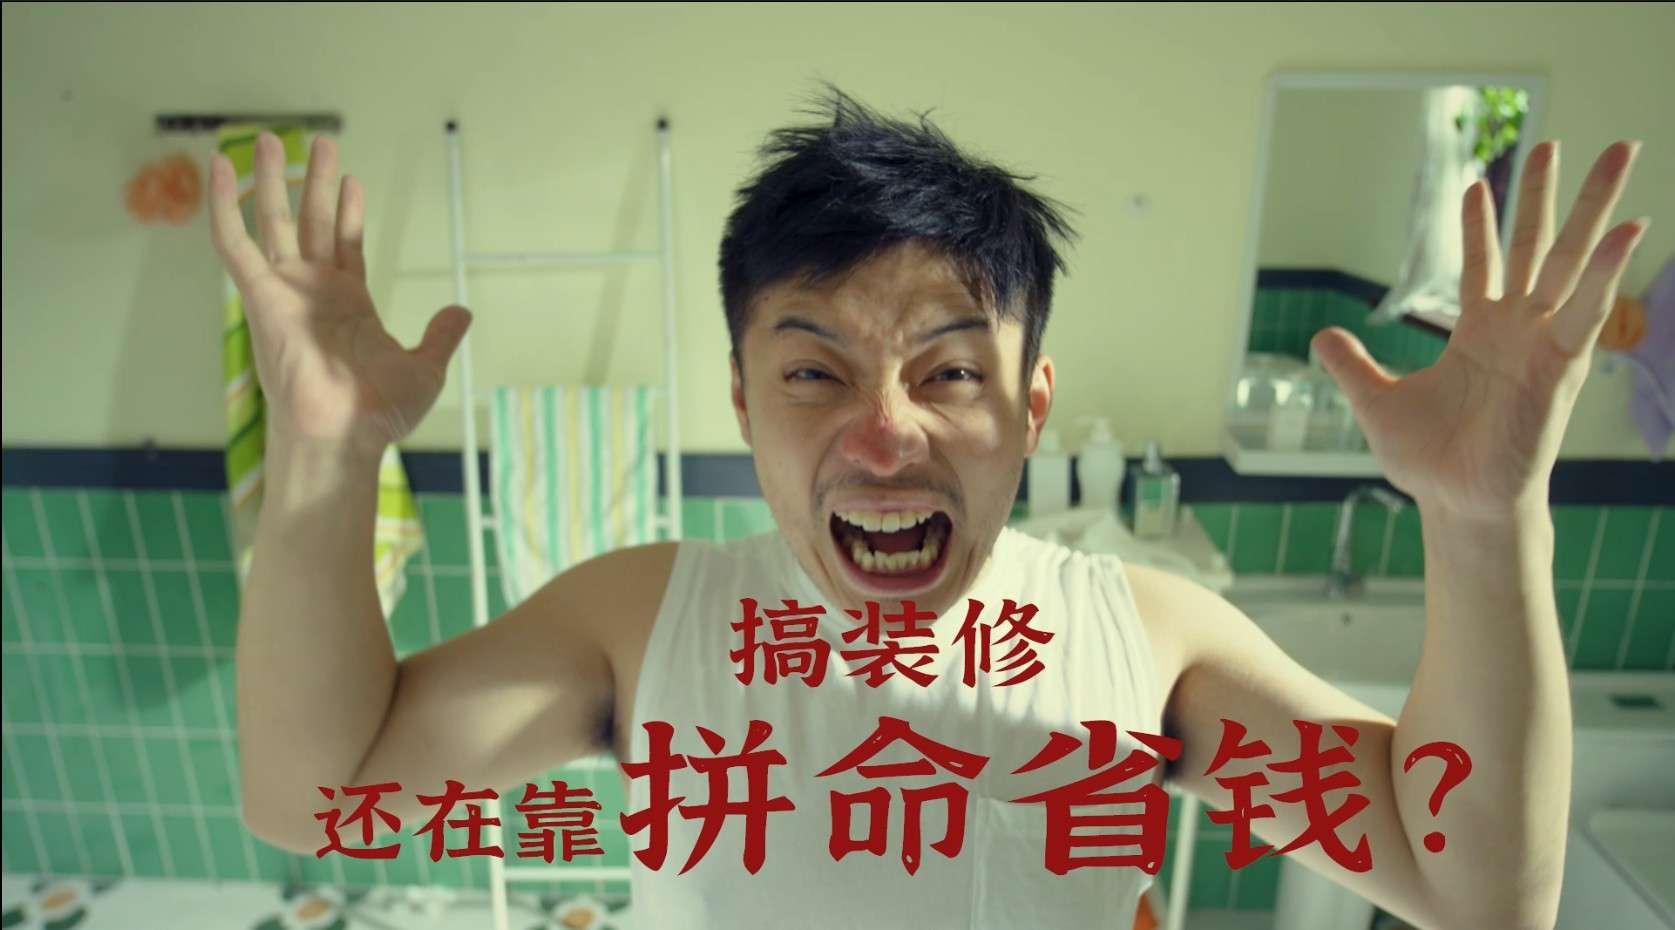 冠珠幸福锦鲤节创意广告-挤牙膏篇